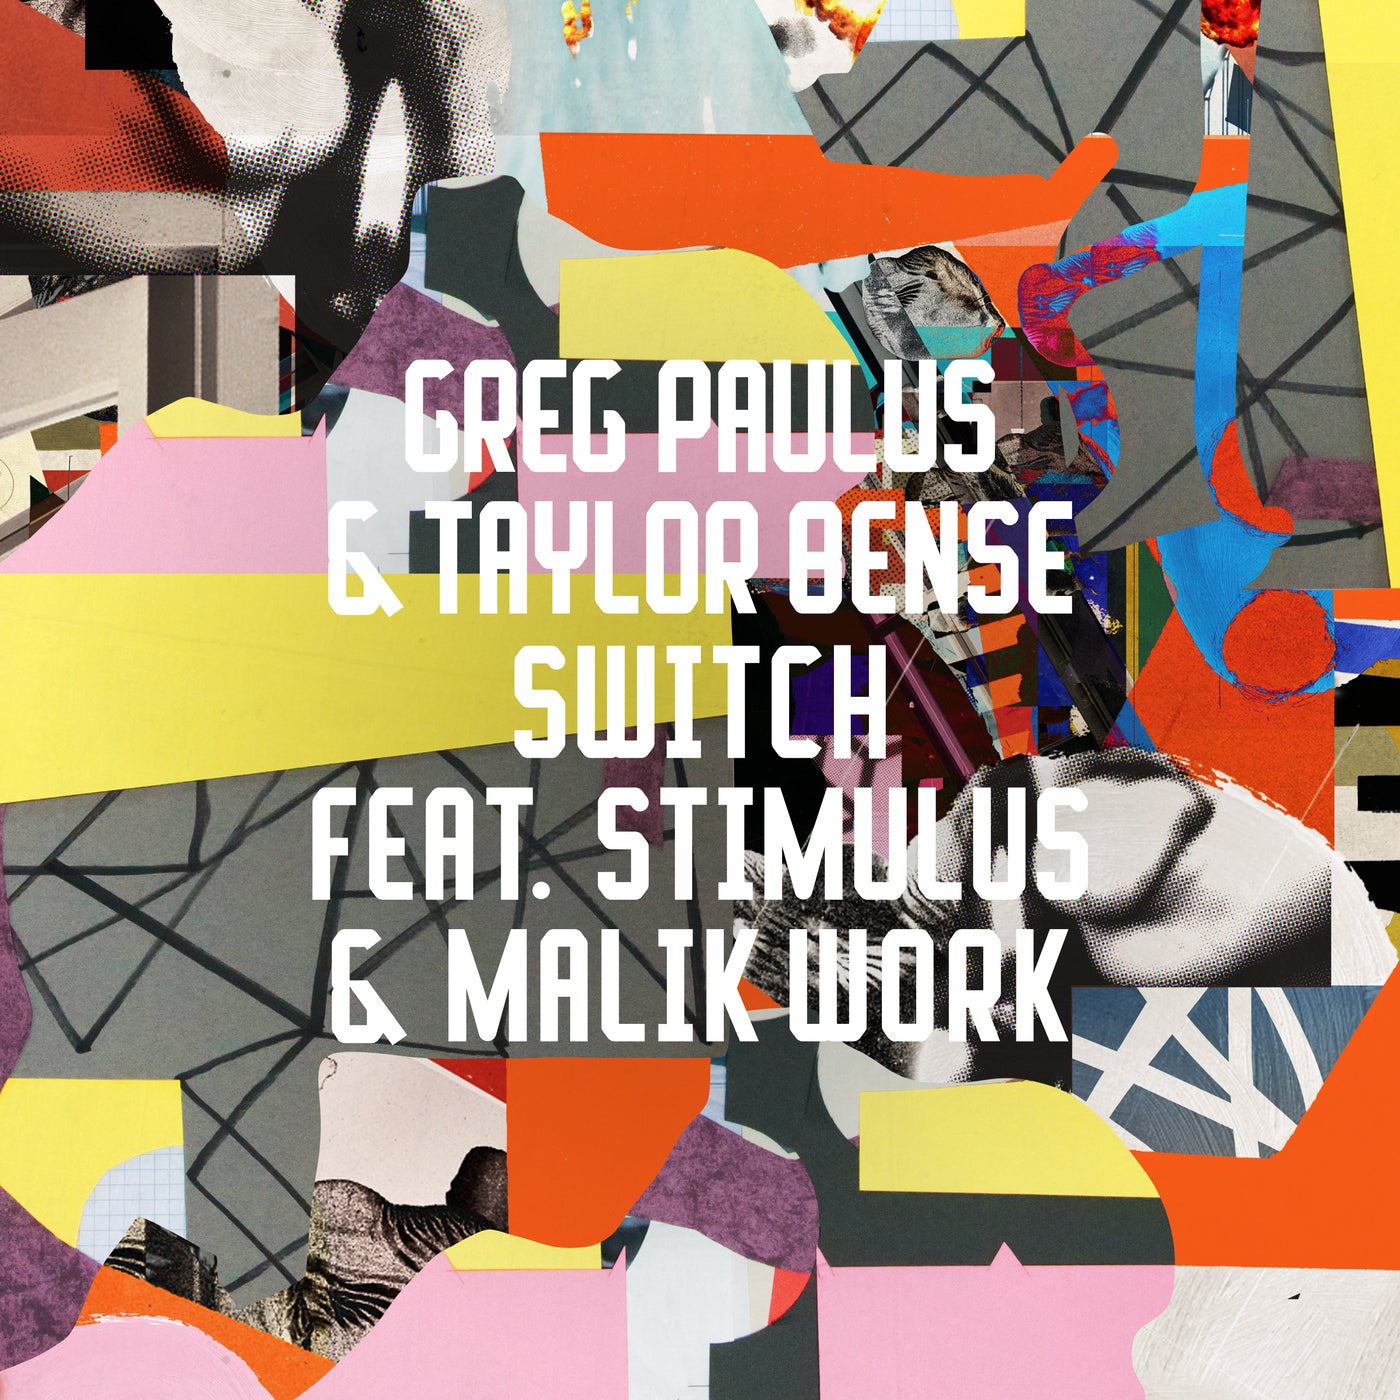 Switch (feat. Stimulus & Malik Work)